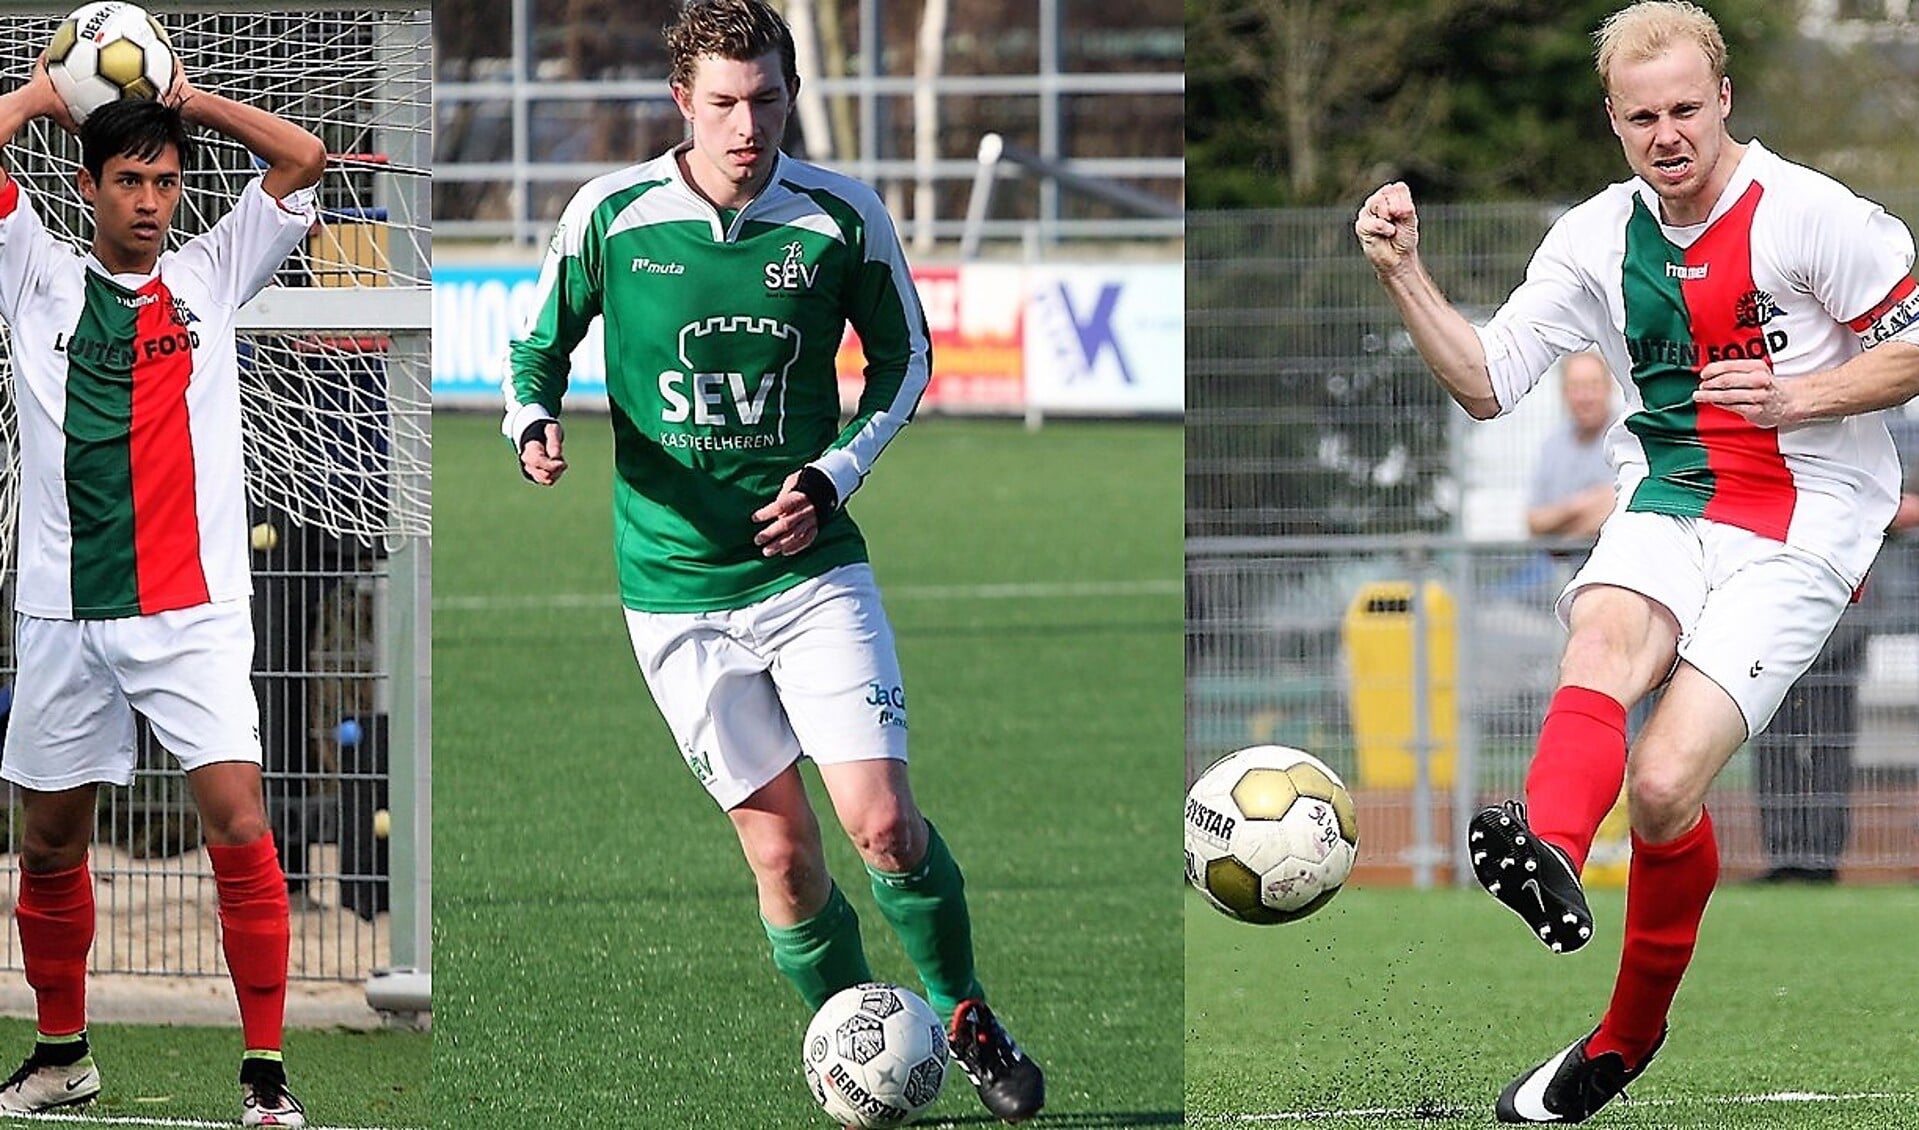 De smaakmakers van het weekend Geus (Stompwijk '92), Janssen (SEV) en Ammerlaan (Stompwijk '92; hier de 2-1) scoorden 8 doelpunten (foto's: AW).